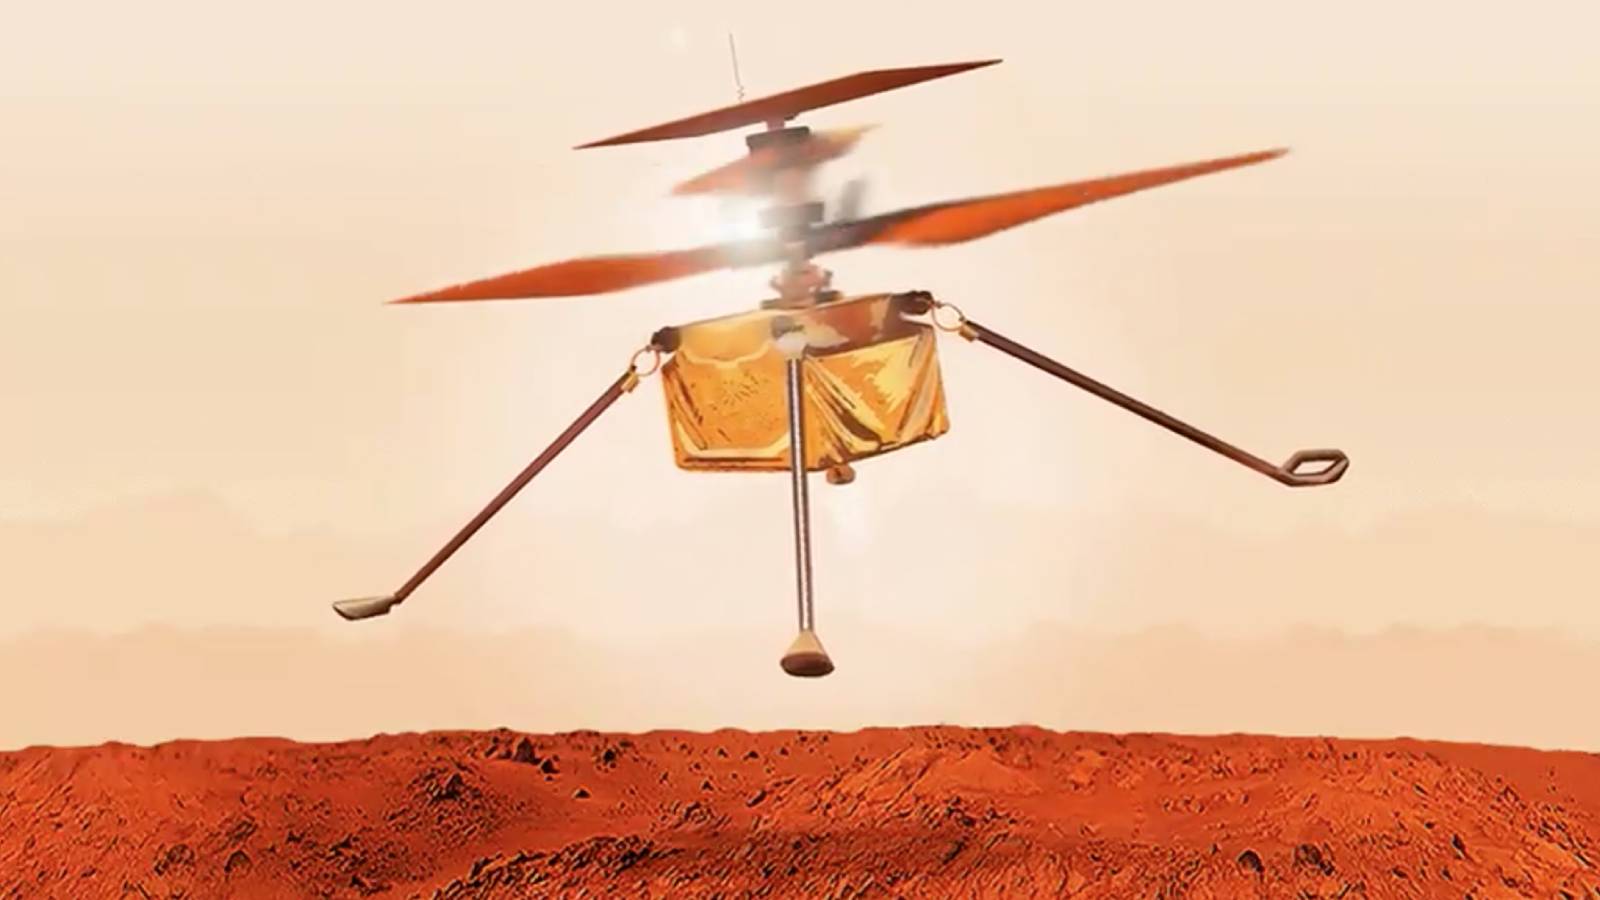 Ingenuity : troisième vol sur Mars réussi pour l'hélicoptère